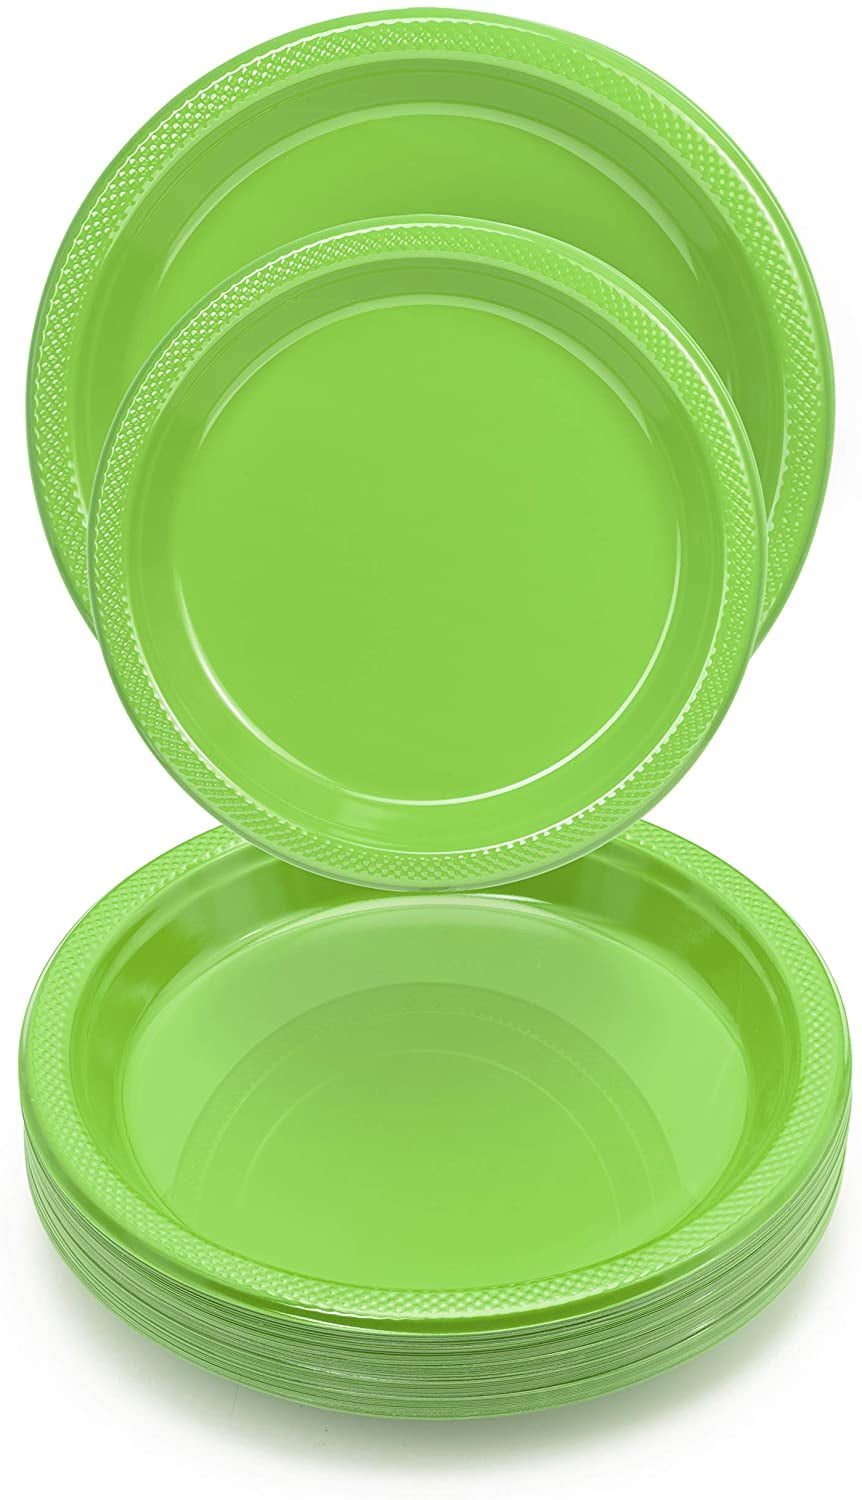 leef ermee pistool Bezienswaardigheden bekijken Exquisite 7" Disposable Plastic Plates - 50 Count Party Pack Plates -  Premium Plastic Disposable Dessert/Salad Plates, Black - Walmart.com -  Walmart.com